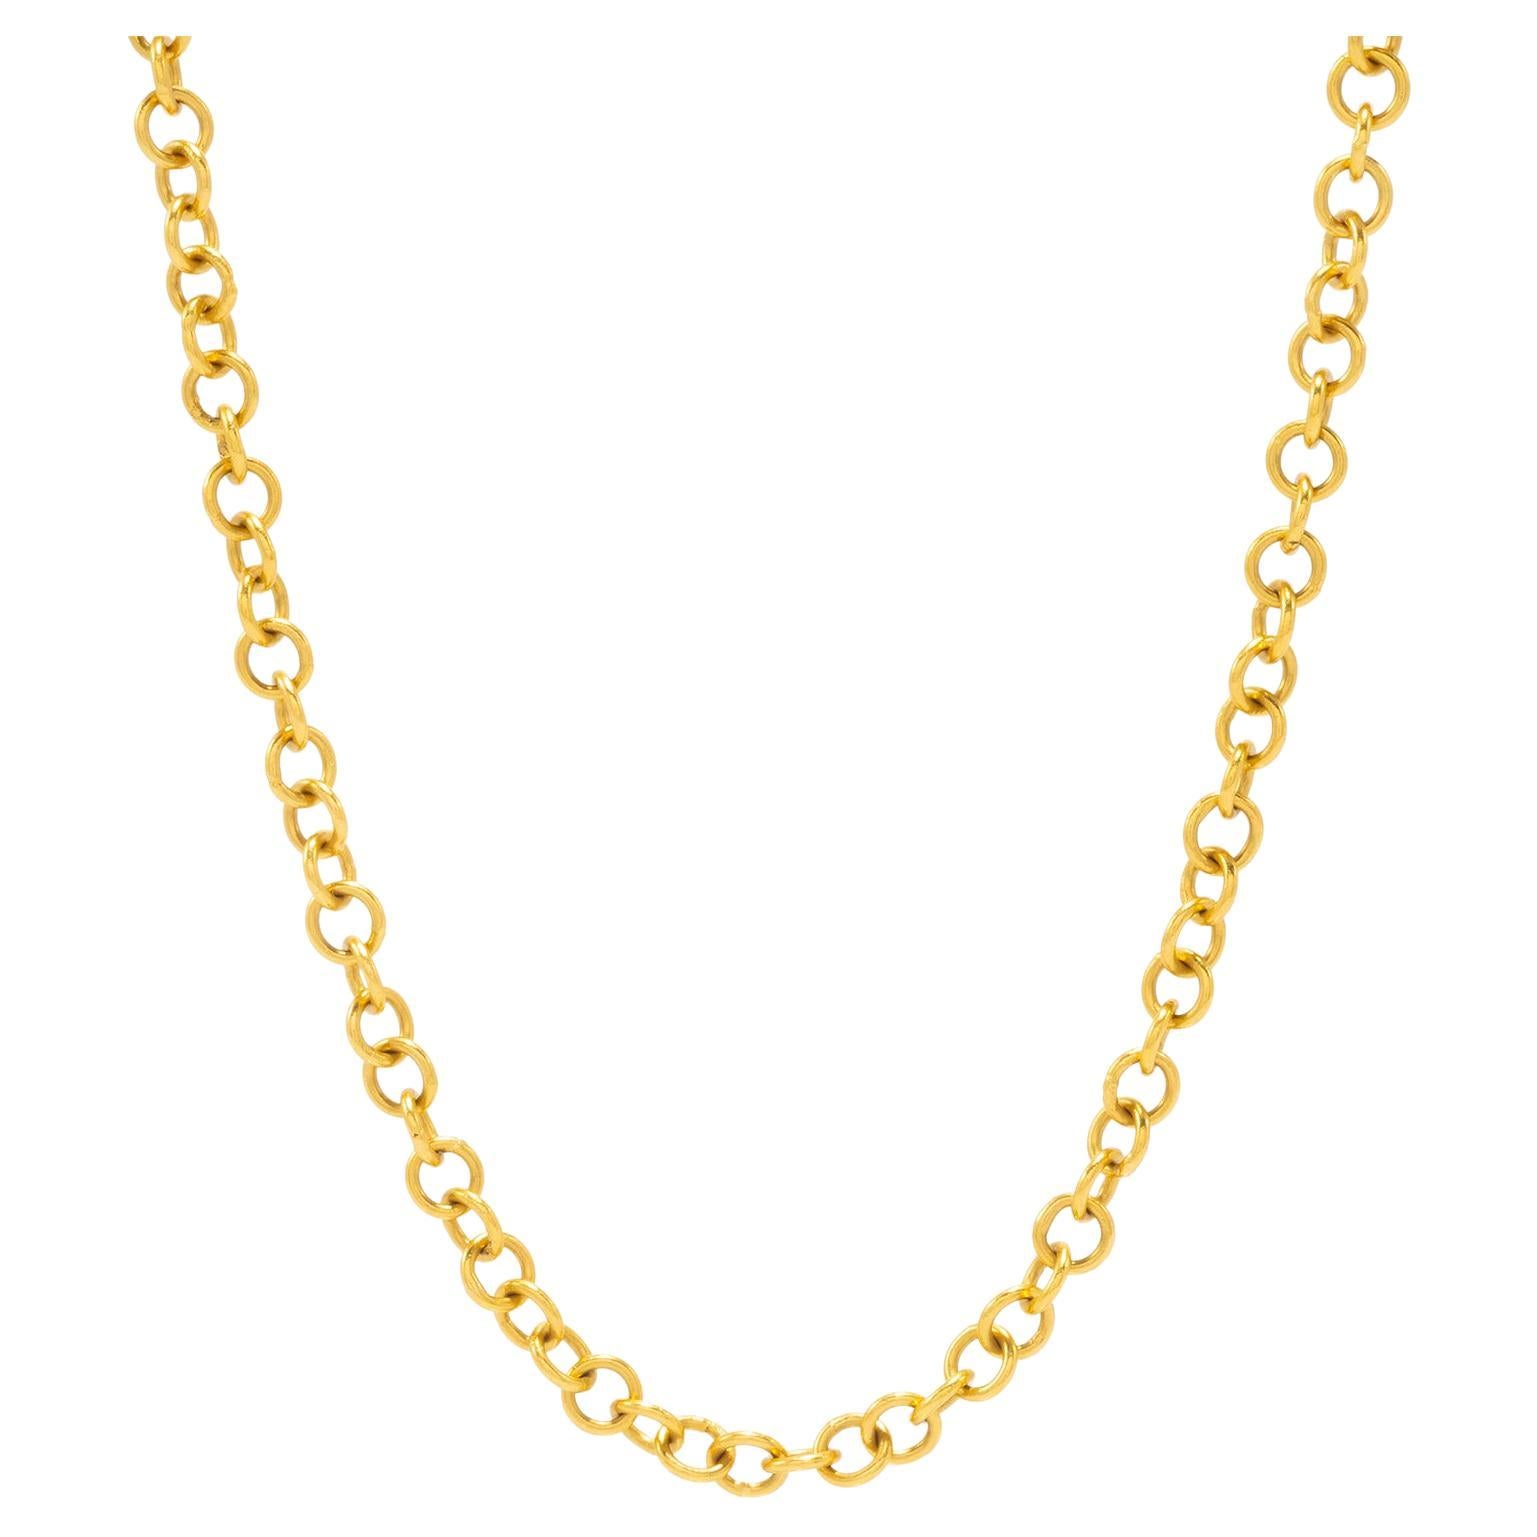 16"" 20k Gold Handgefertigte dicke Kette Halskette